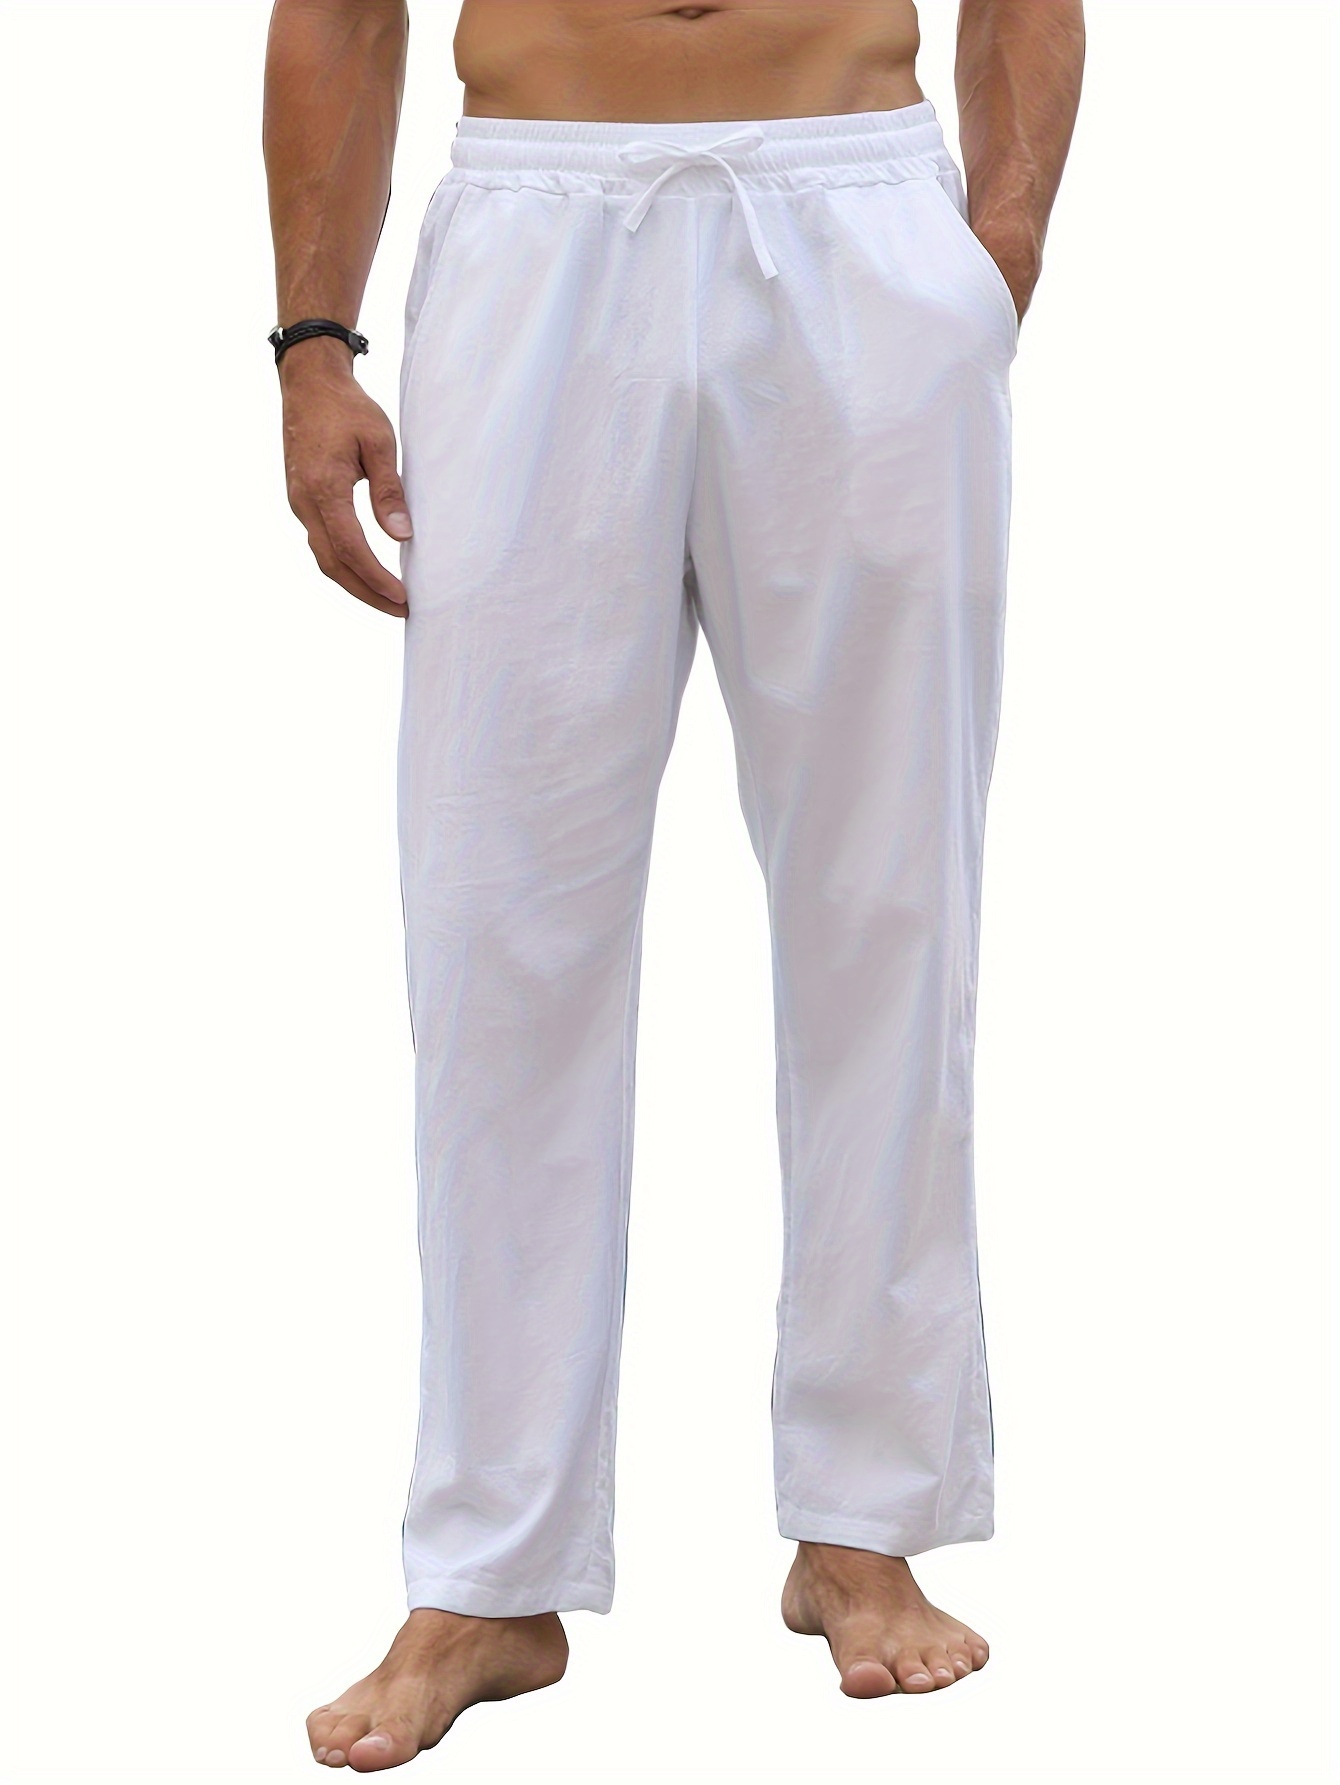 BESPOKE - White Pants for Men - 183122 - www.